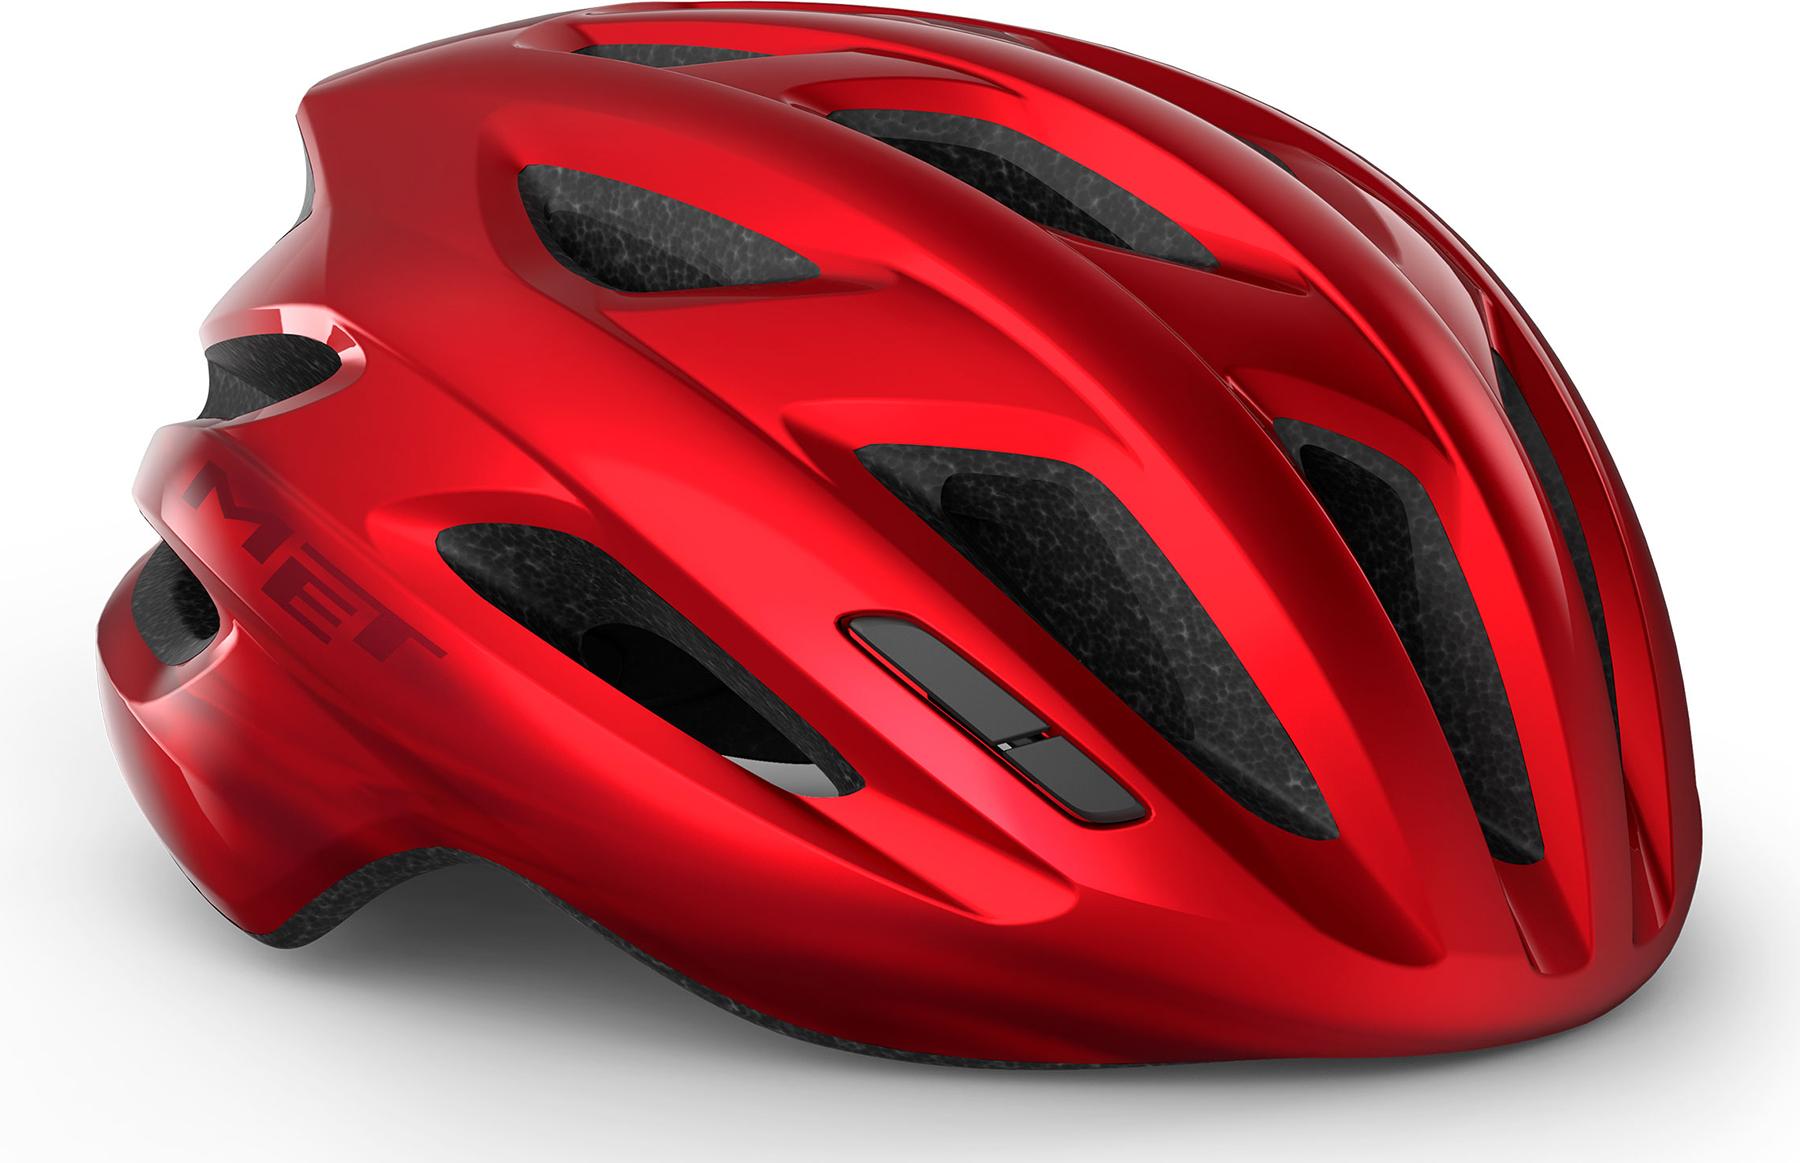 Met Idolo Road Helmet - Red Metallic Glossy